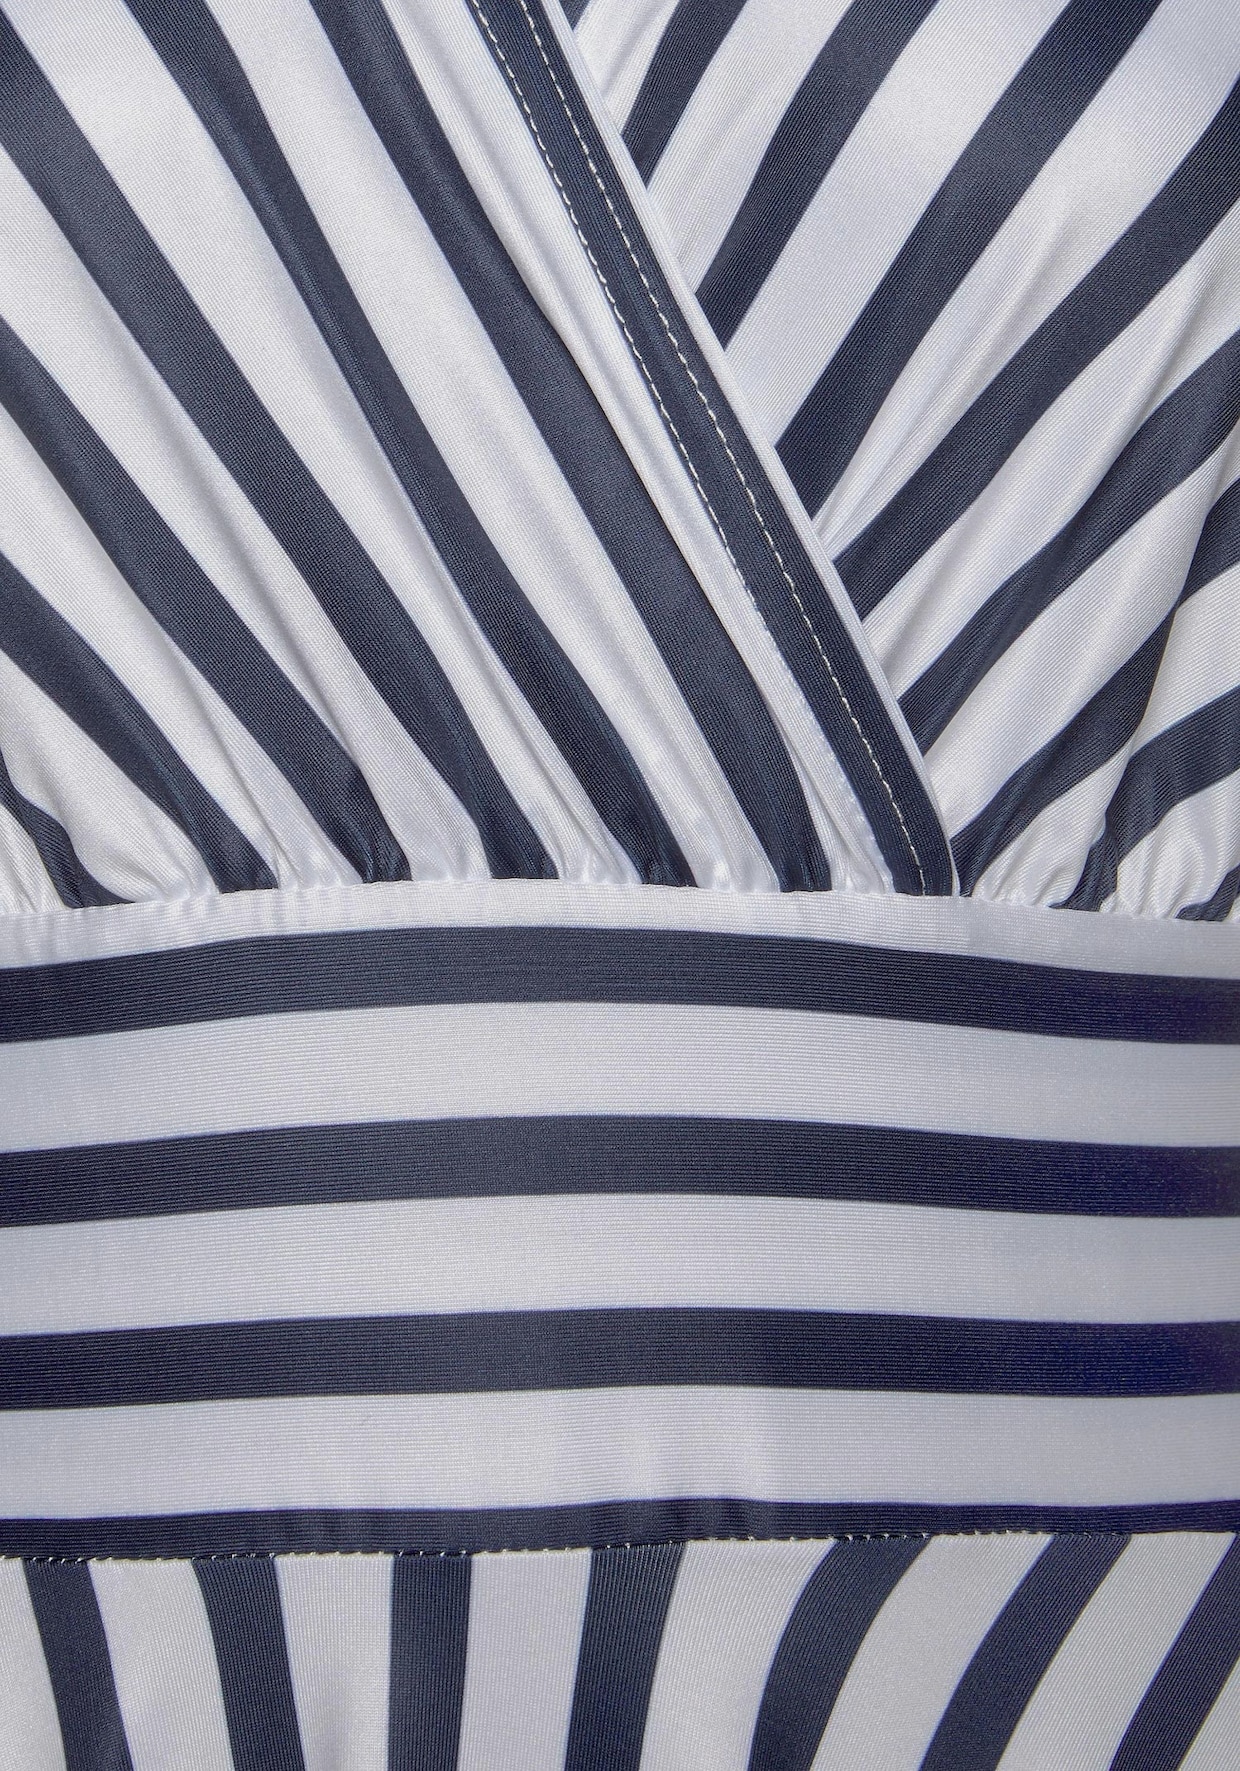 LASCANA Sommerkleid - marine-weiß-gestreift